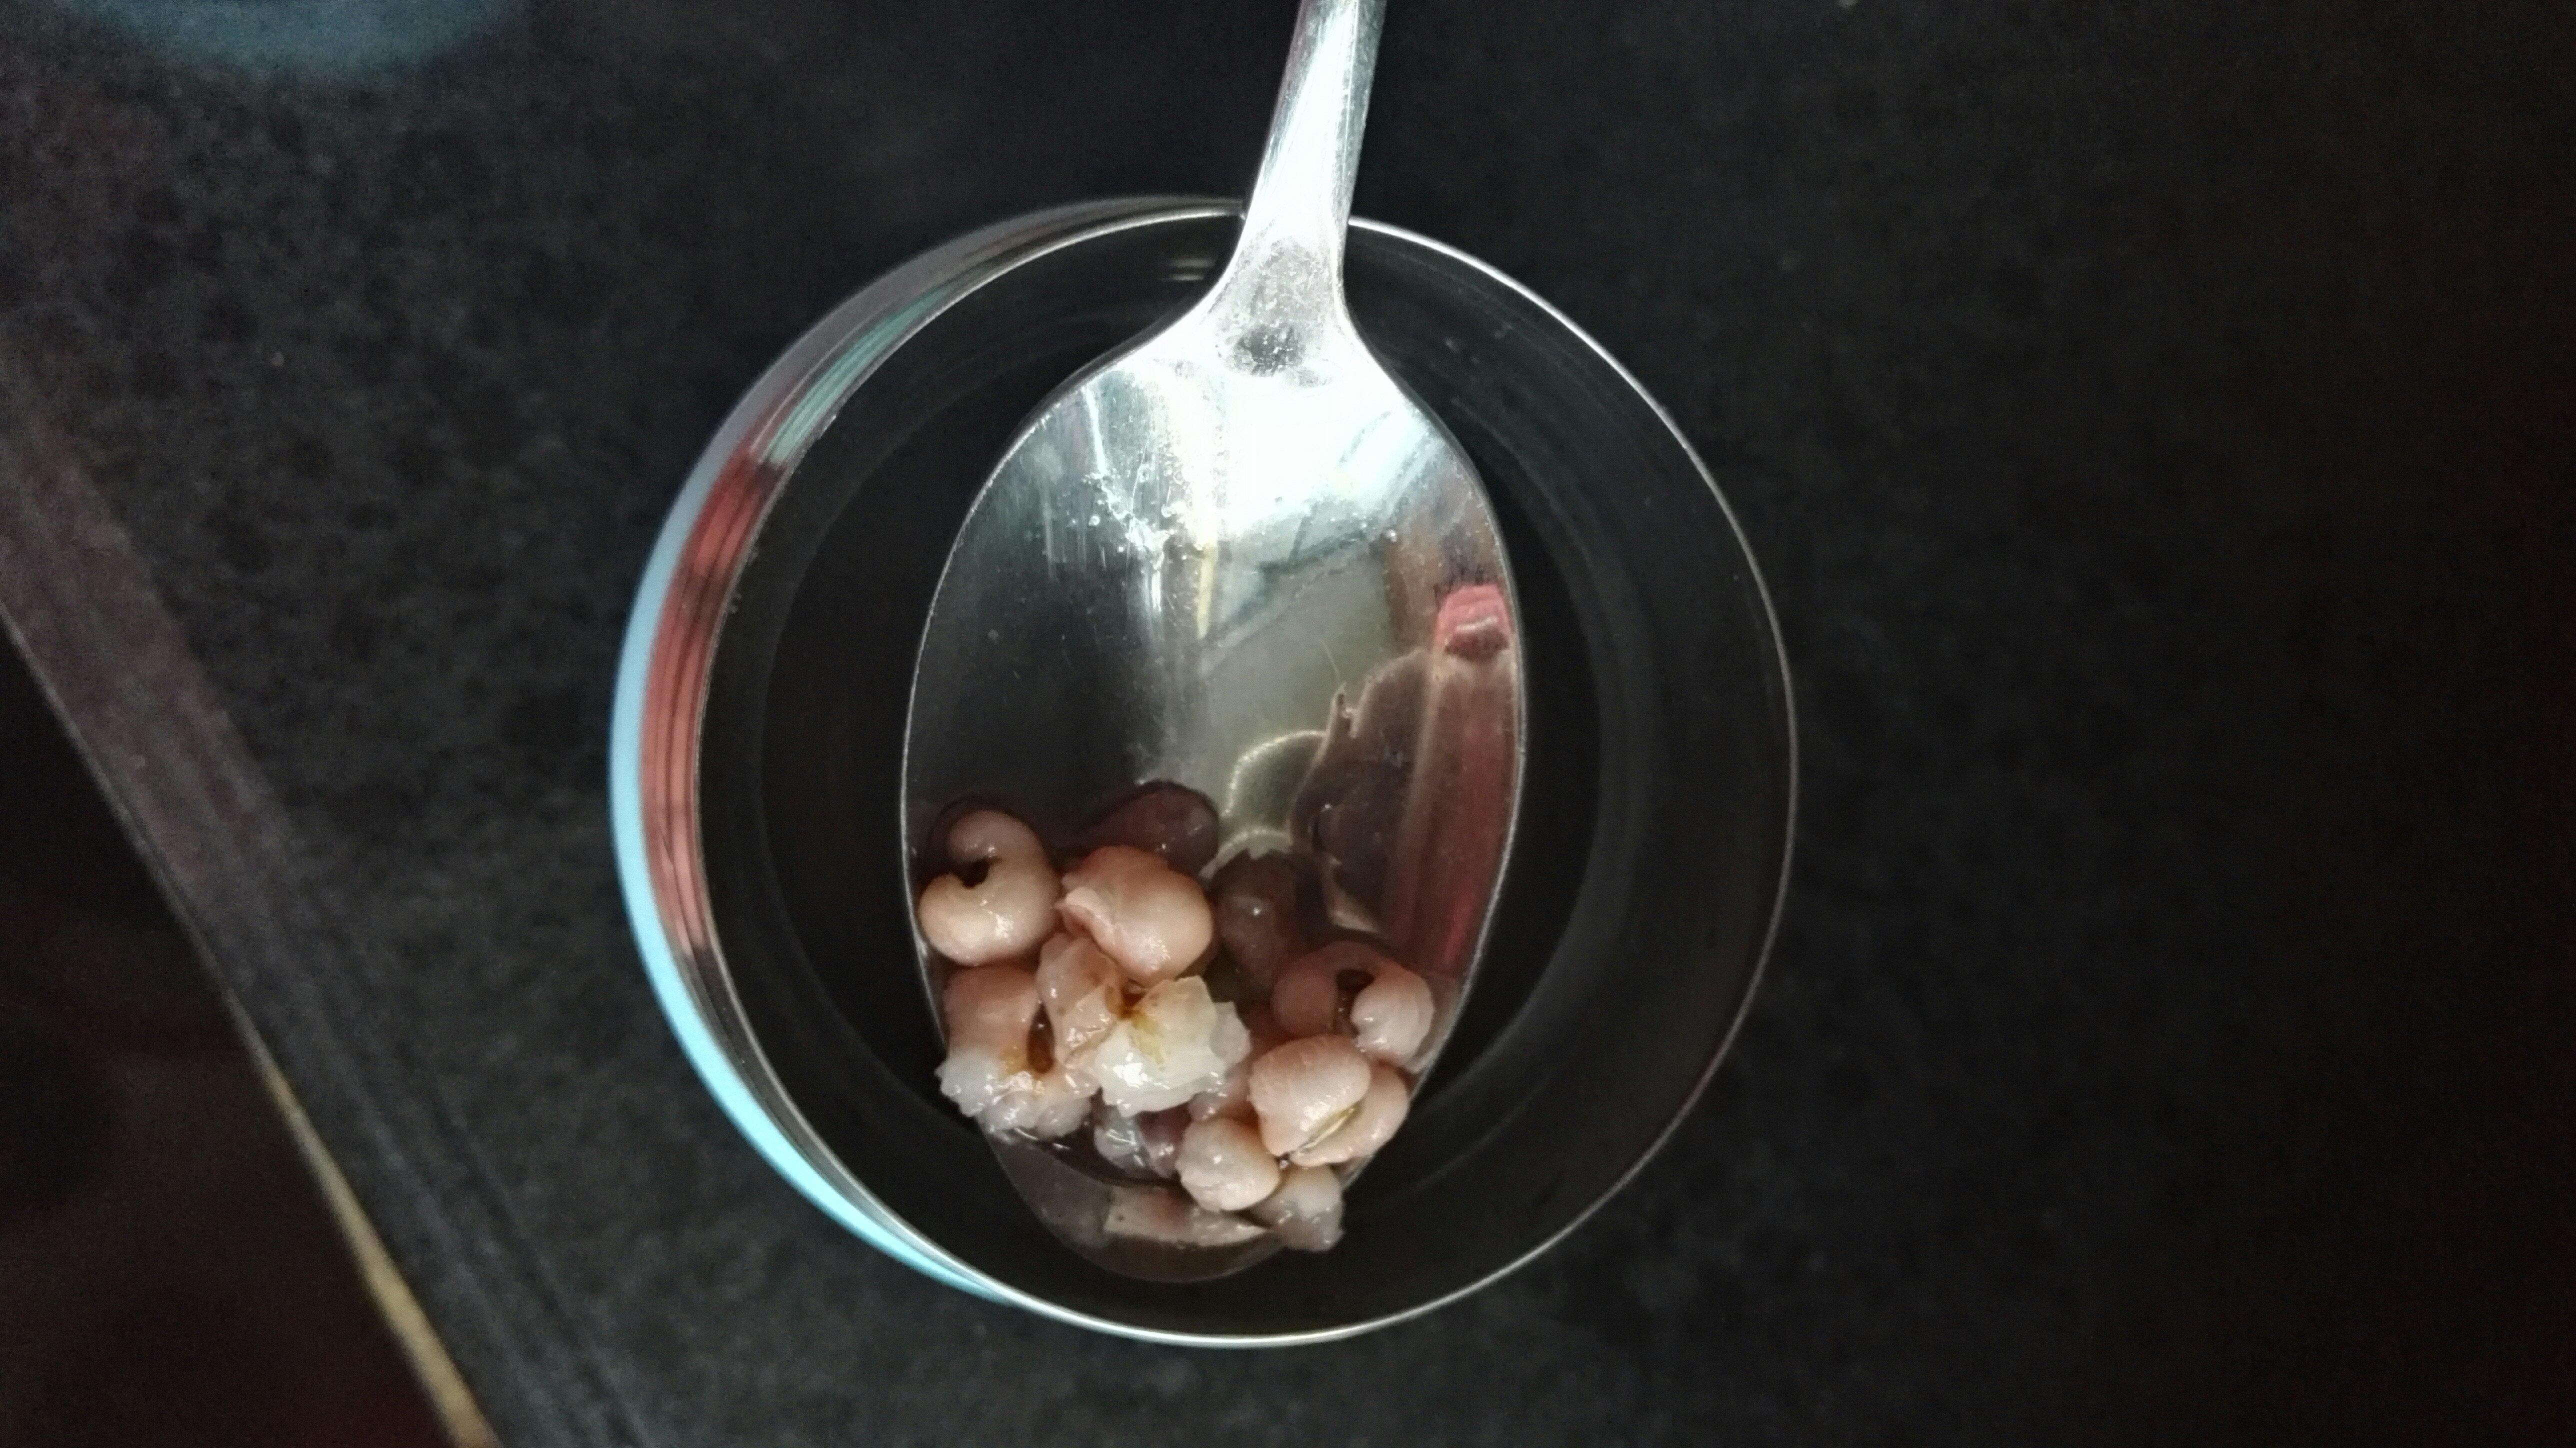 红豆薏米汤的做法